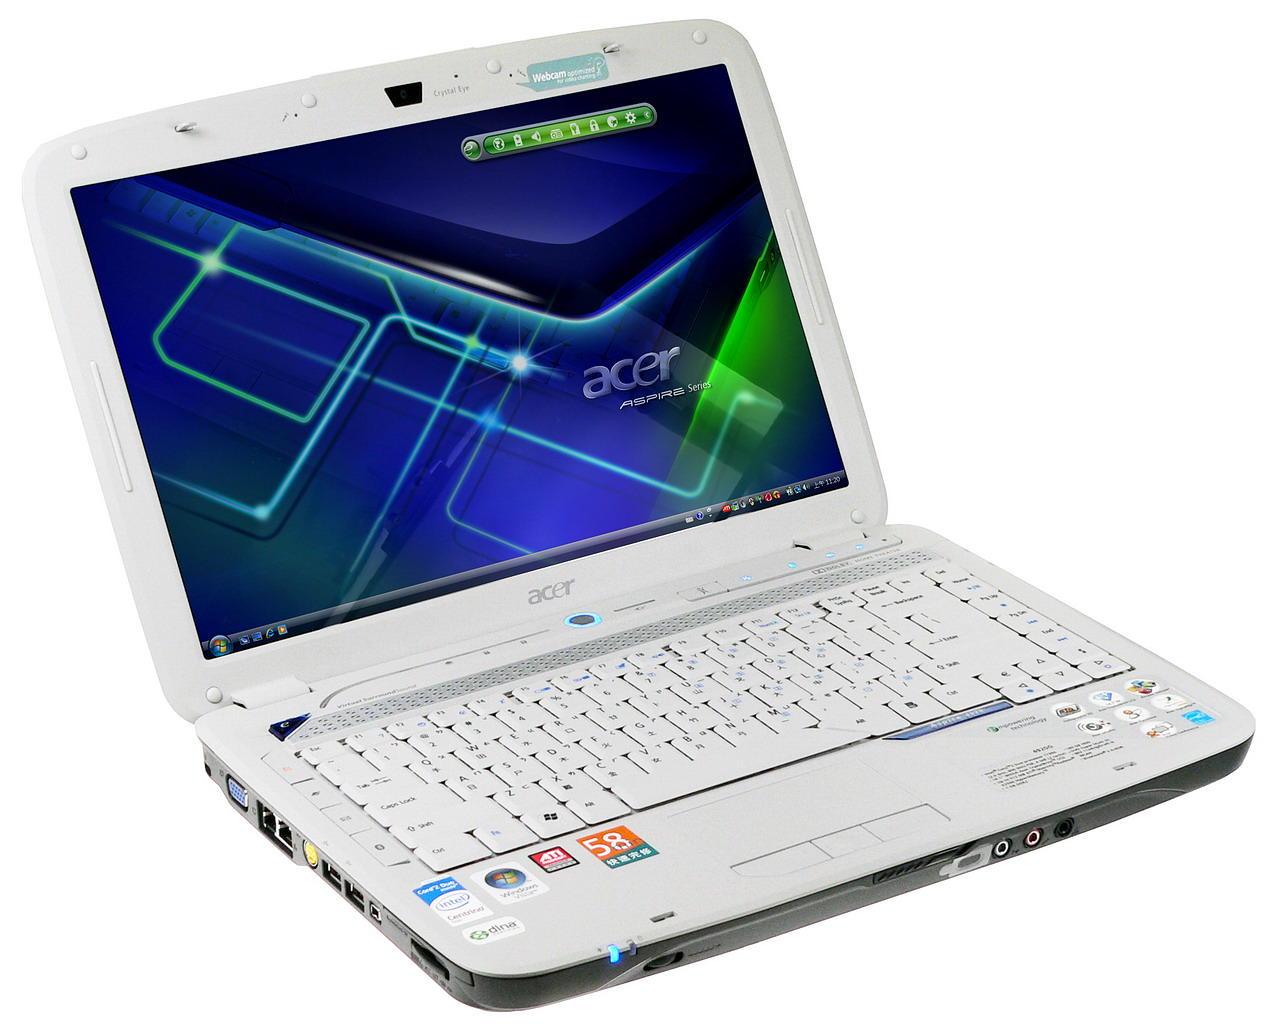 Gambar Notebook/Laptop Acer Murah dan Terbaru